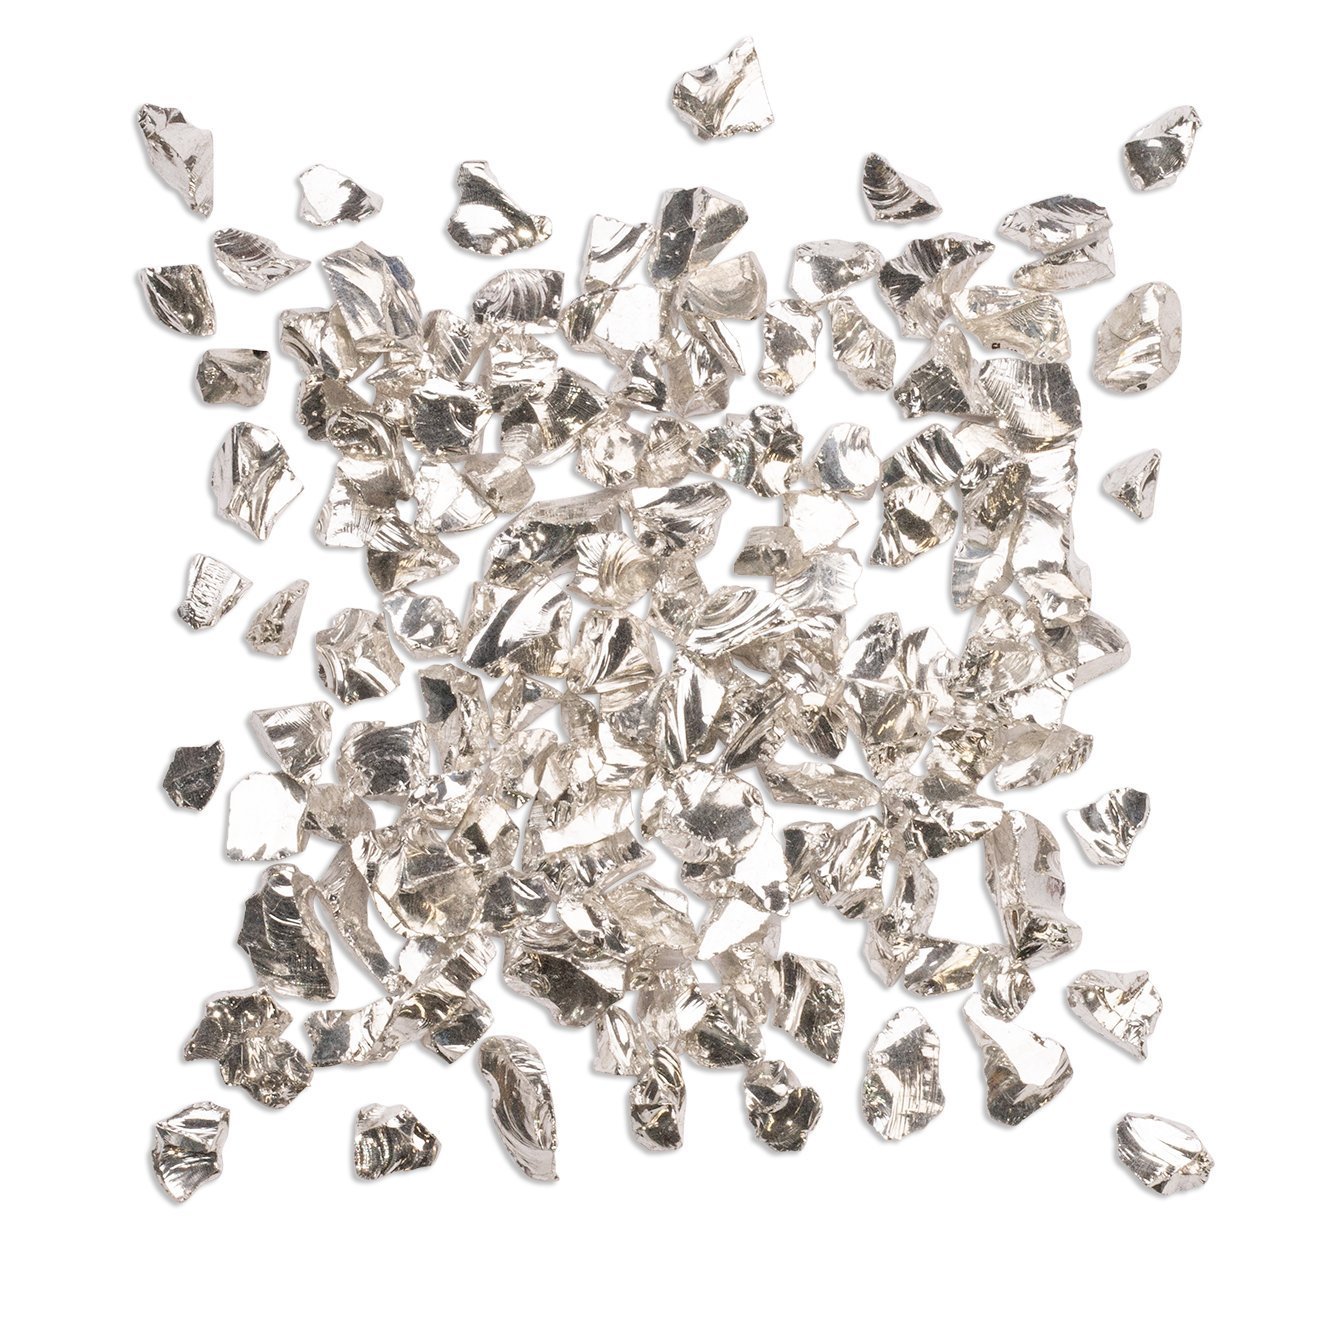 Silver Crushed Glass 150g - CRAFT2U